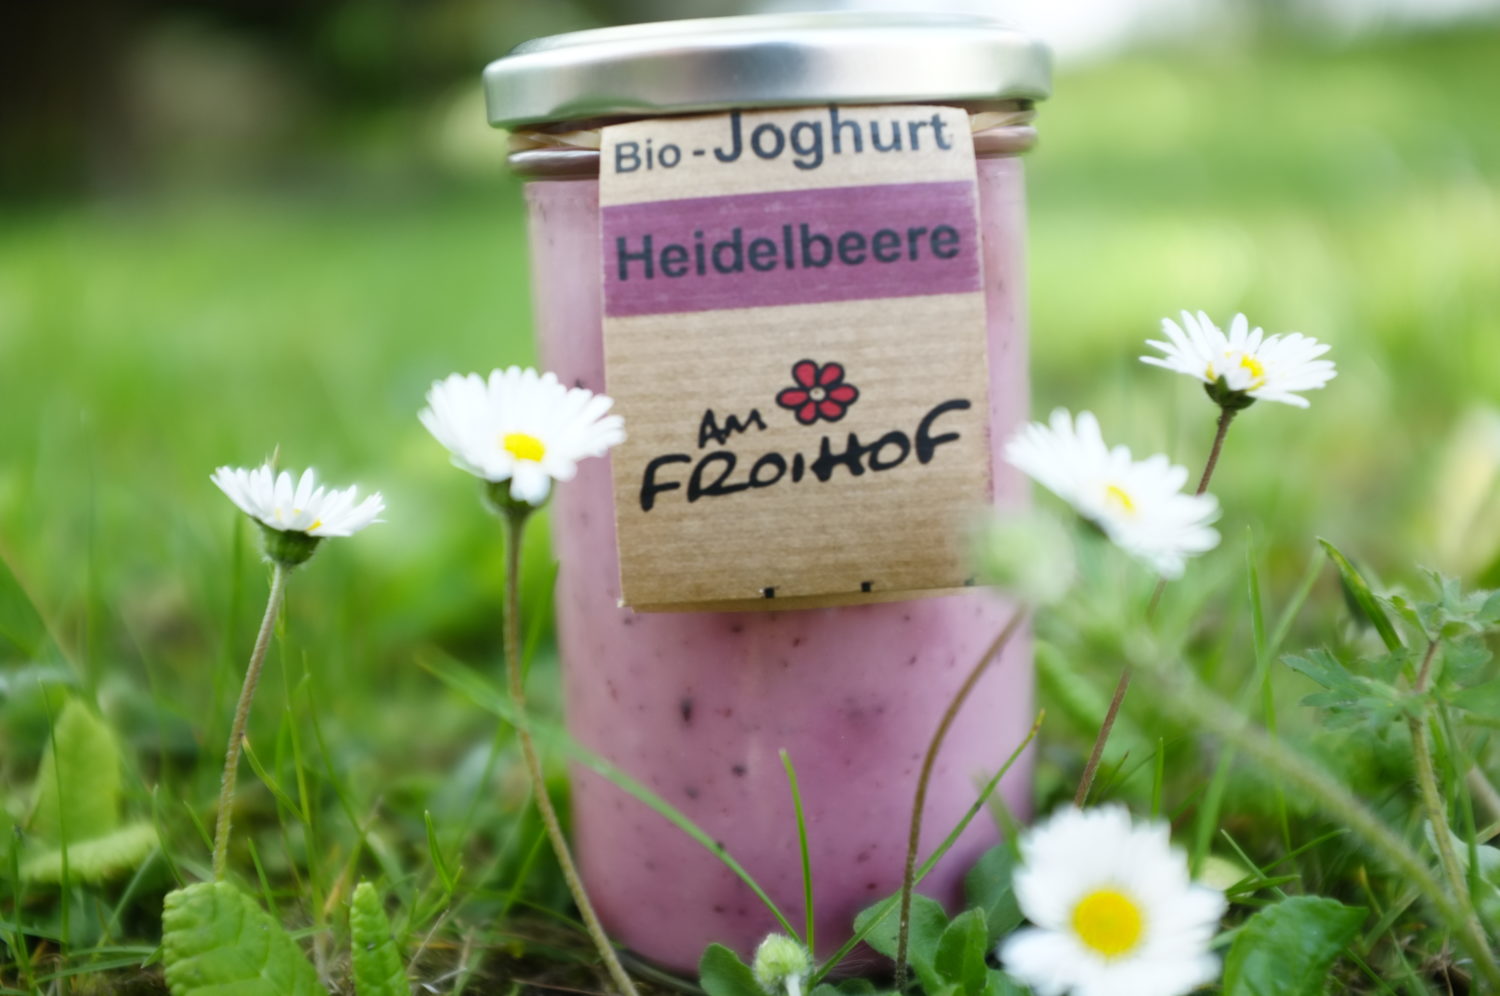 Heidelbeerjoghurt 250g kalbfreundlich Froihof – SpeiseLokal!